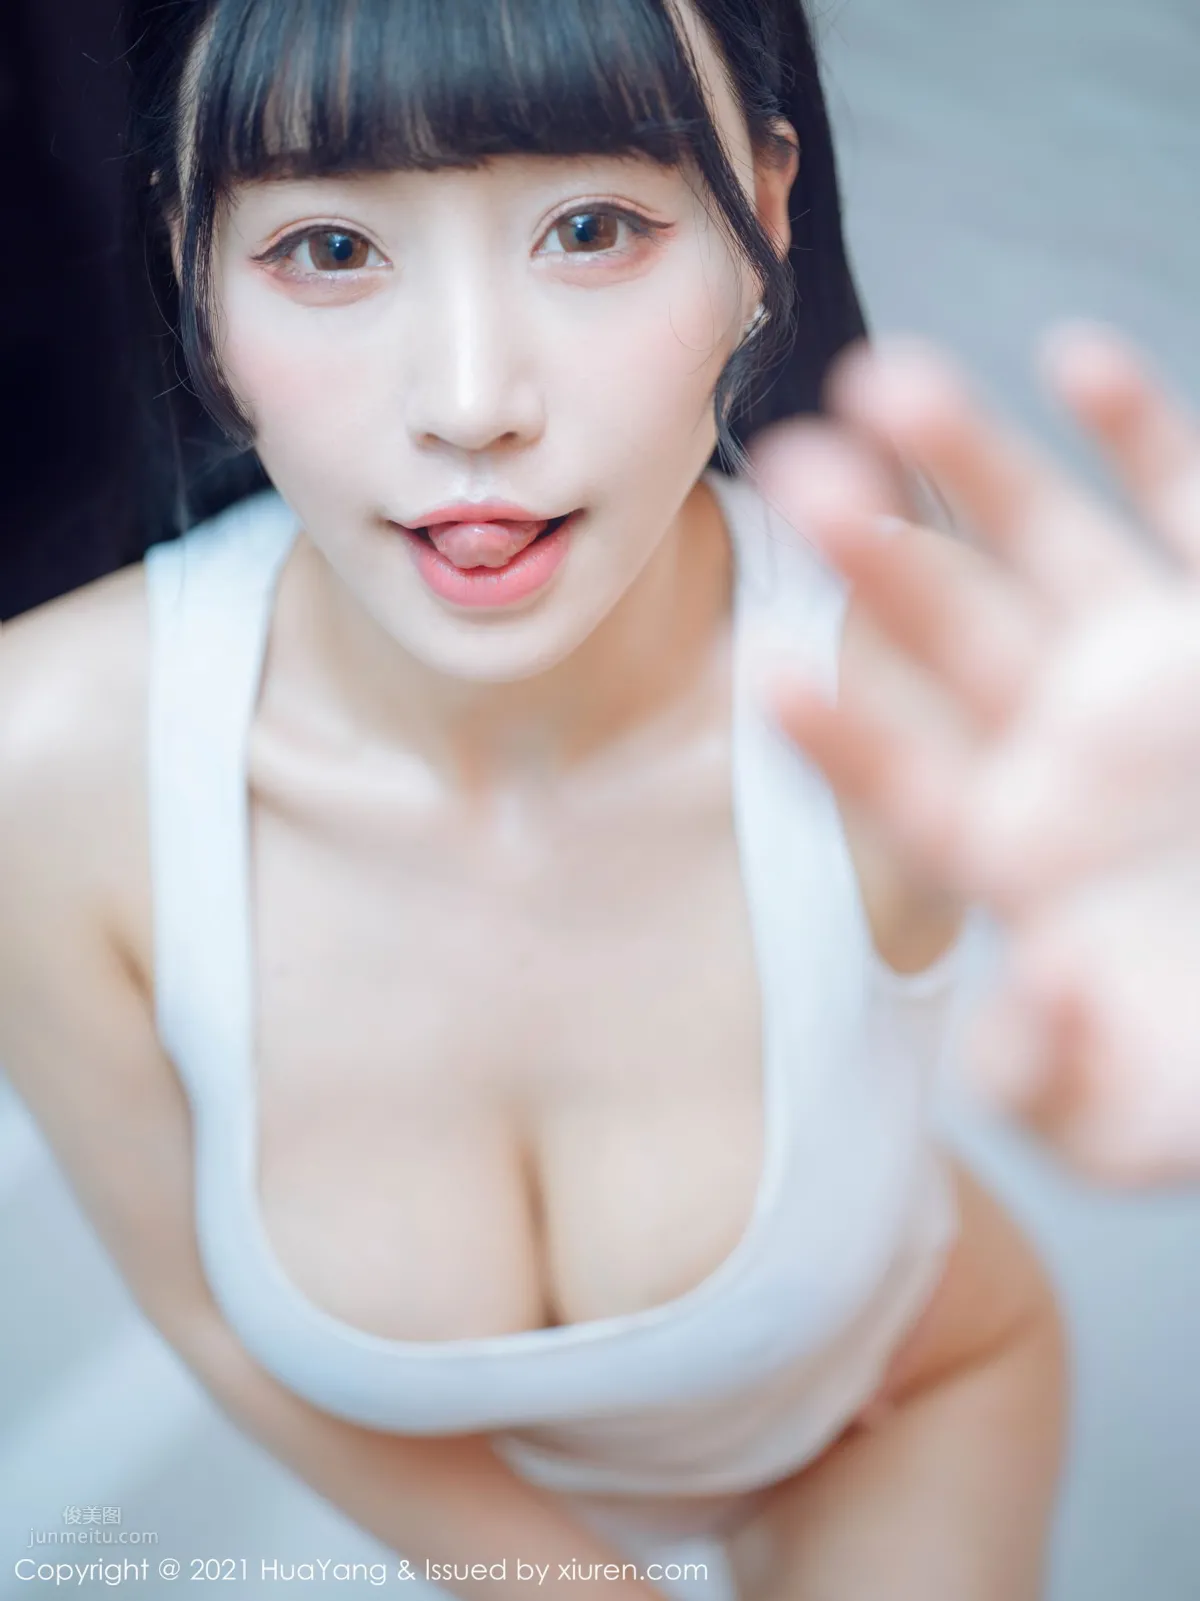 朱可儿Flower (@zhu_ke_er) 中国武汉模特G奶甜心(2) [40P]|内衣泳装 - 武当休闲山庄 - 稳定,和谐,人性化的中文社区